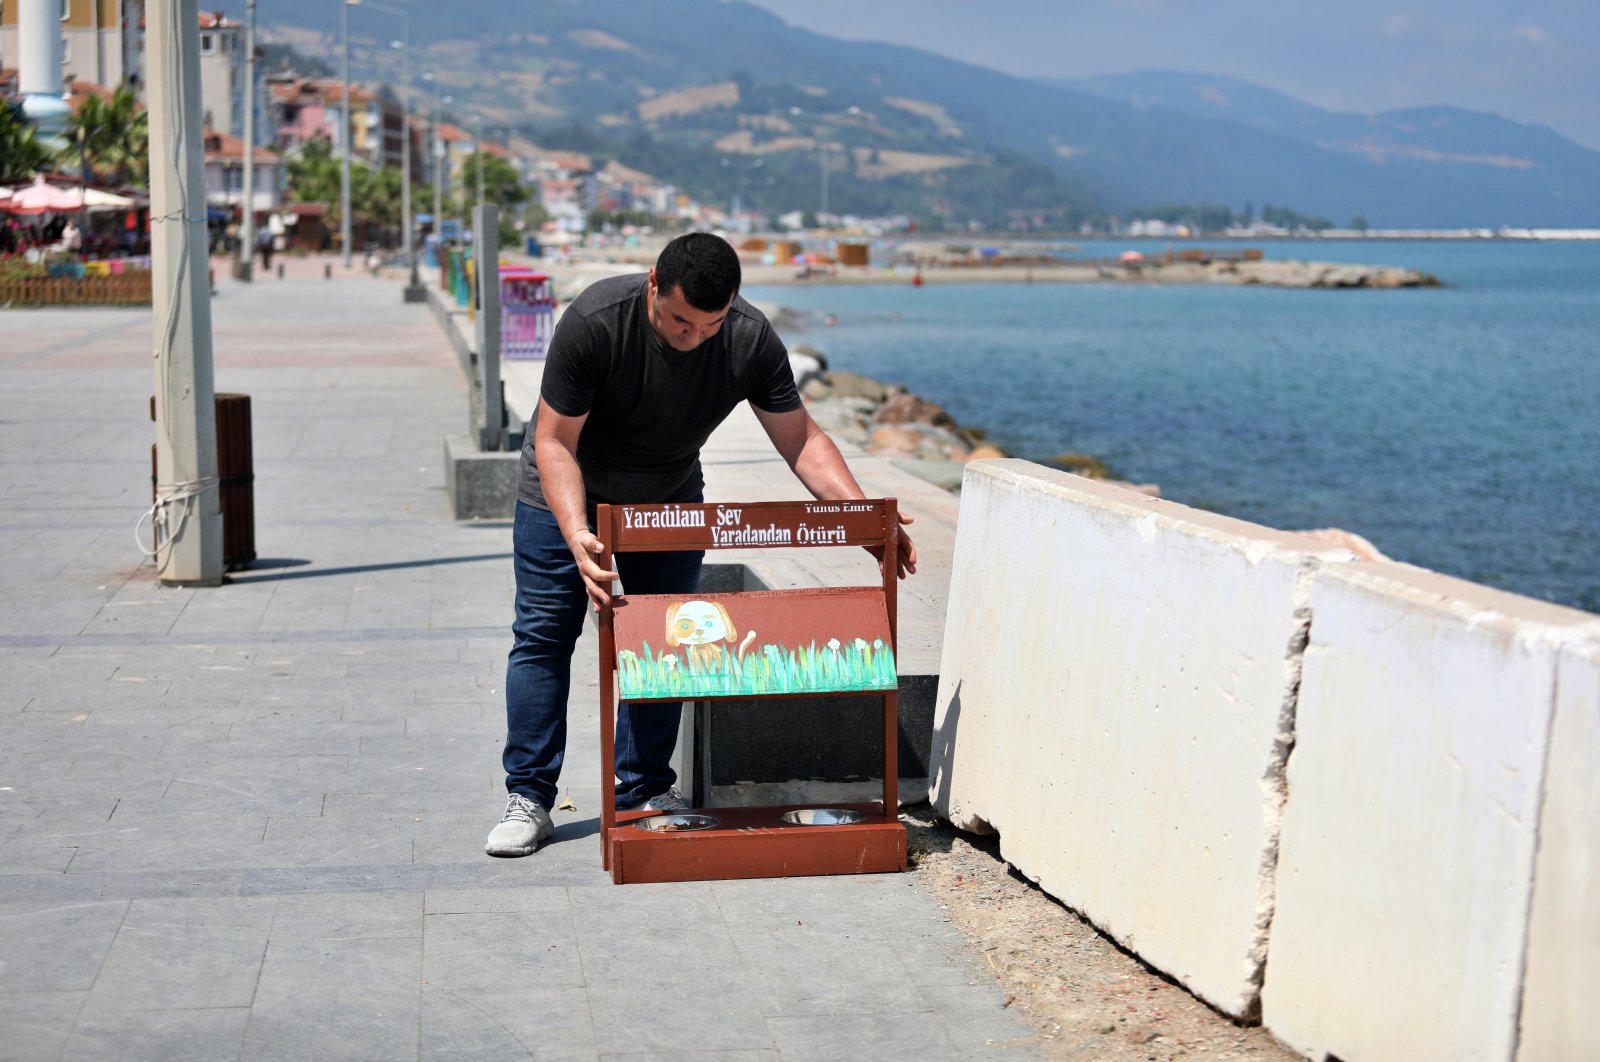 Les tableaux noirs recyclés deviennent des mangeoires pour les animaux en Turquie